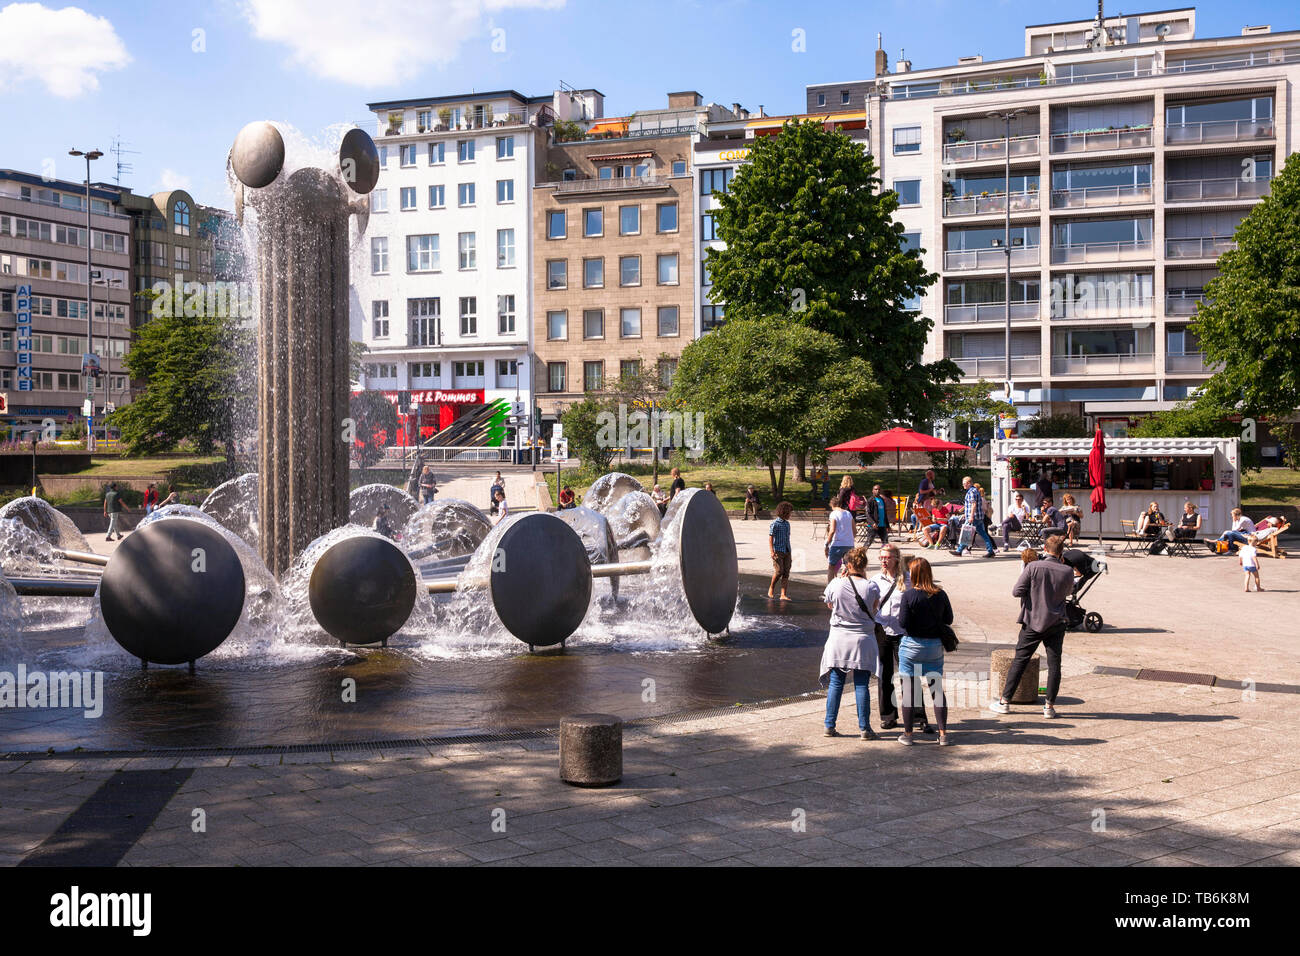 La piazza Ebertplatz con la fontana di Wolfgang Goeddertz, Colonia, Germania. der Ebertplatz mit dem Brunnen von Wolfgang Goeddertz, Koeln, Deutsc Foto Stock